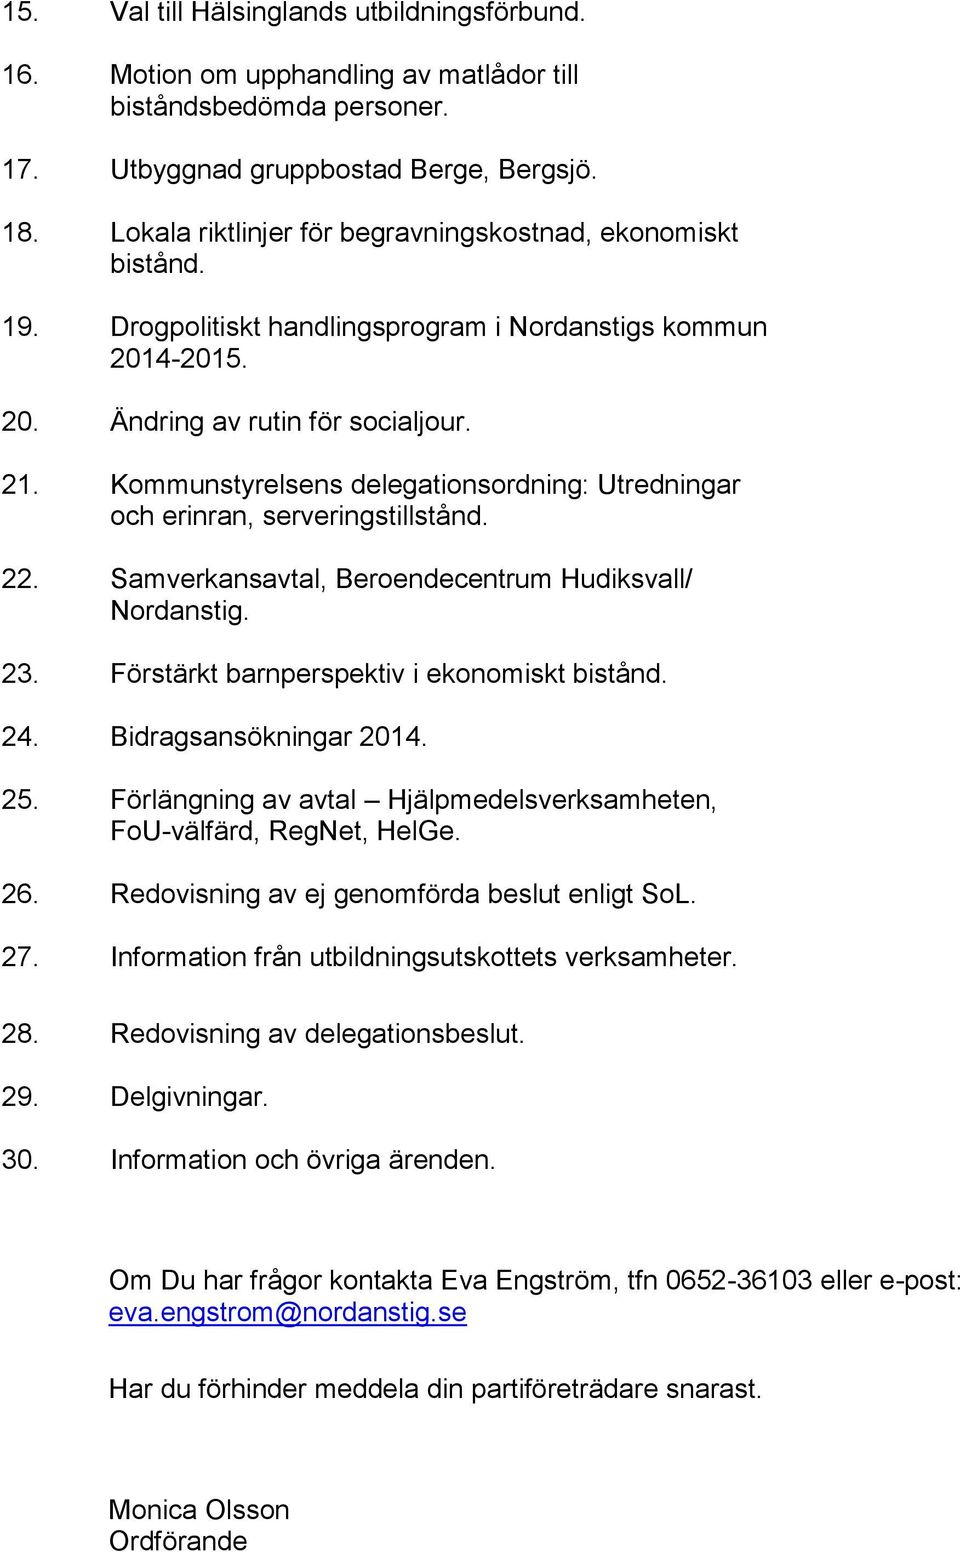 Kommunstyrelsens delegationsordning: Utredningar och erinran, serveringstillstånd. 22. Samverkansavtal, Beroendecentrum Hudiksvall/ Nordanstig. 23. Förstärkt barnperspektiv i ekonomiskt bistånd. 24.